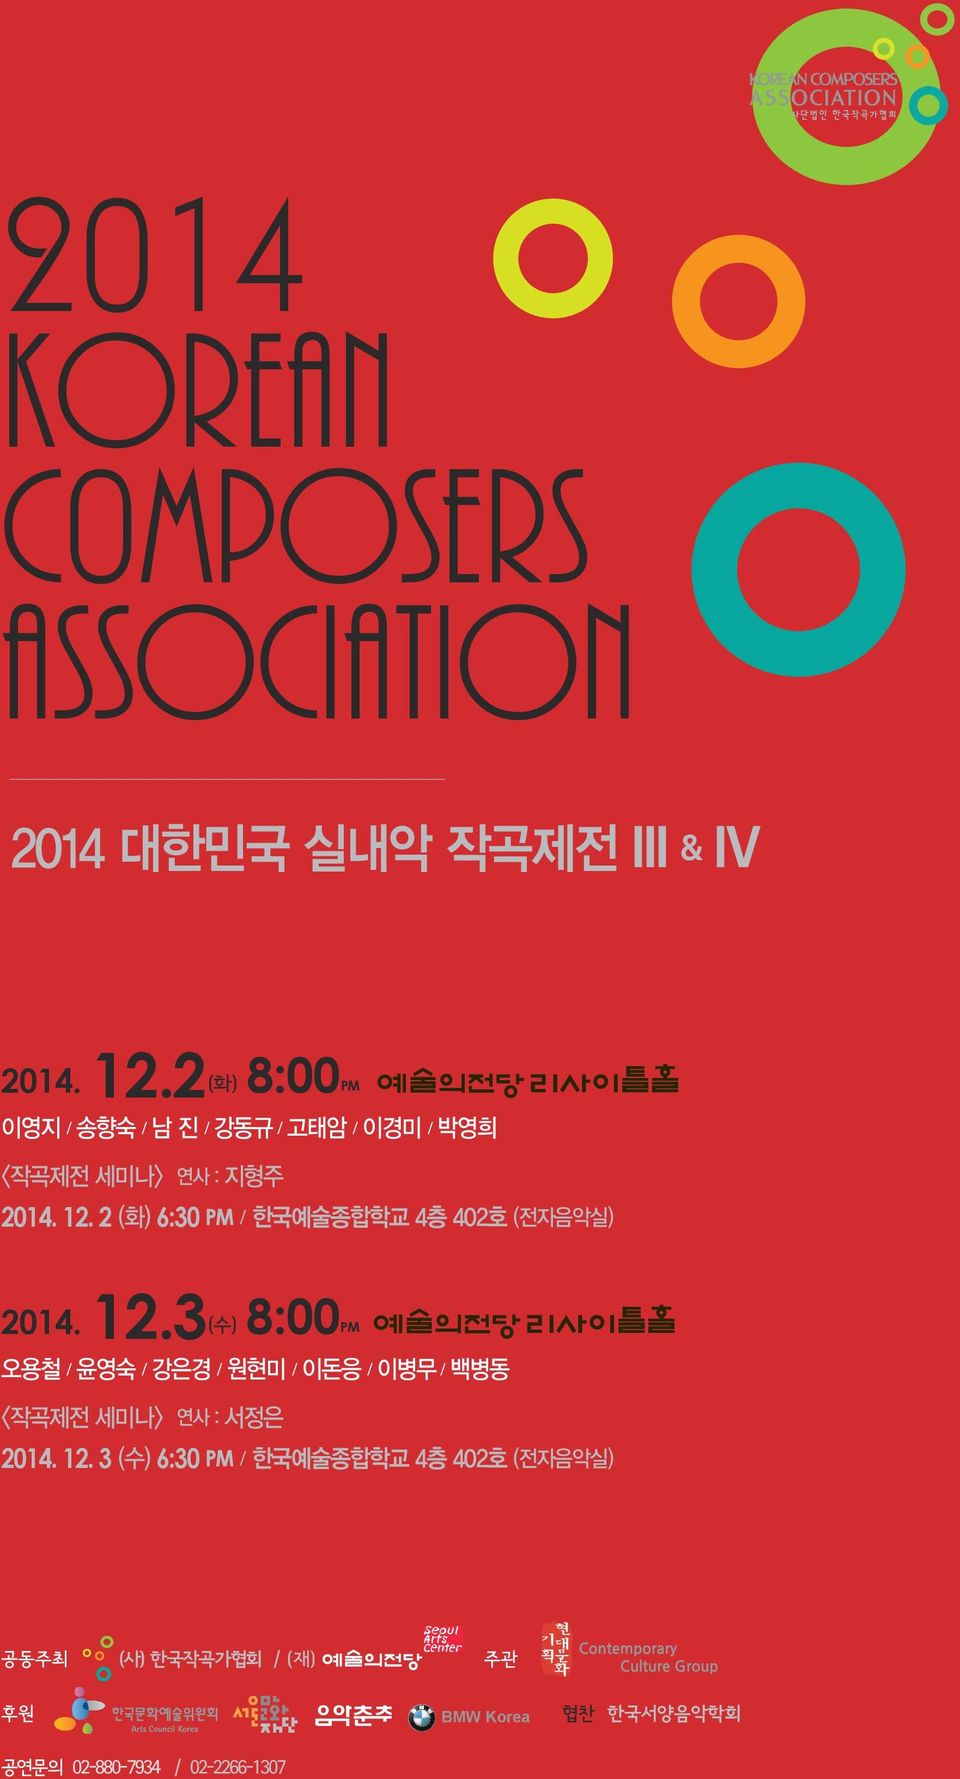 2 (화) 6:30 PM / 한국예술종합학교 4층 402호 (전자음악실) 2014. 12.